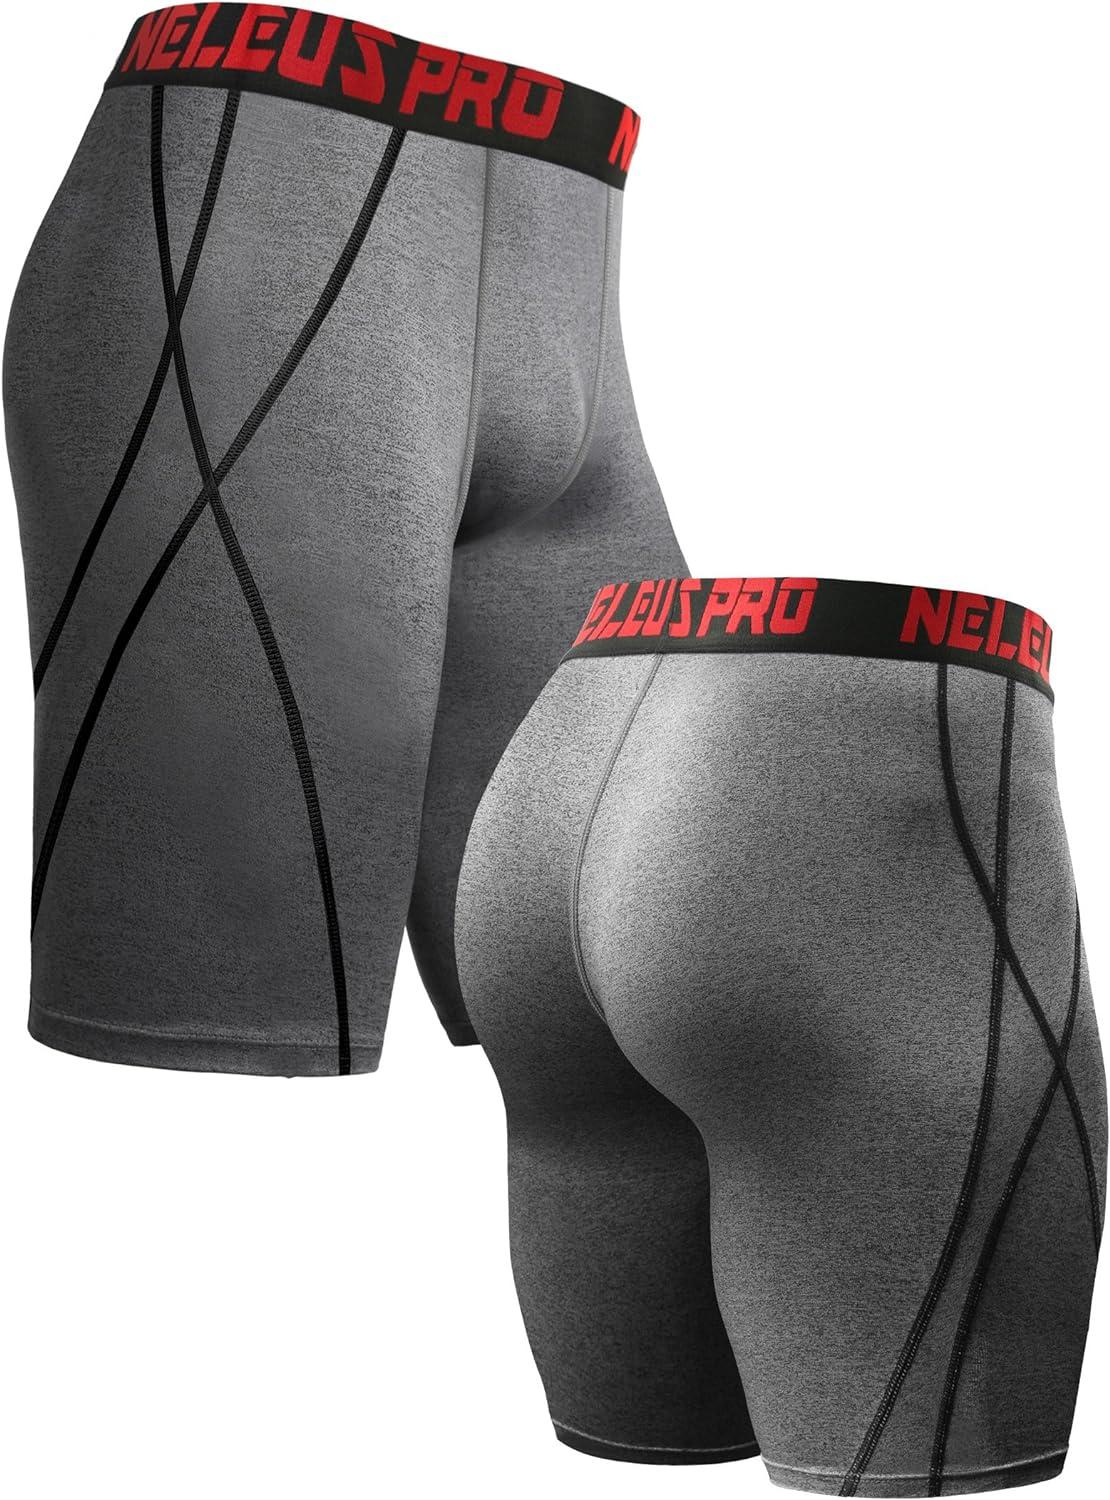 NELEUS Men's 3 Pack Performance Compression Shorts X-Large 6010